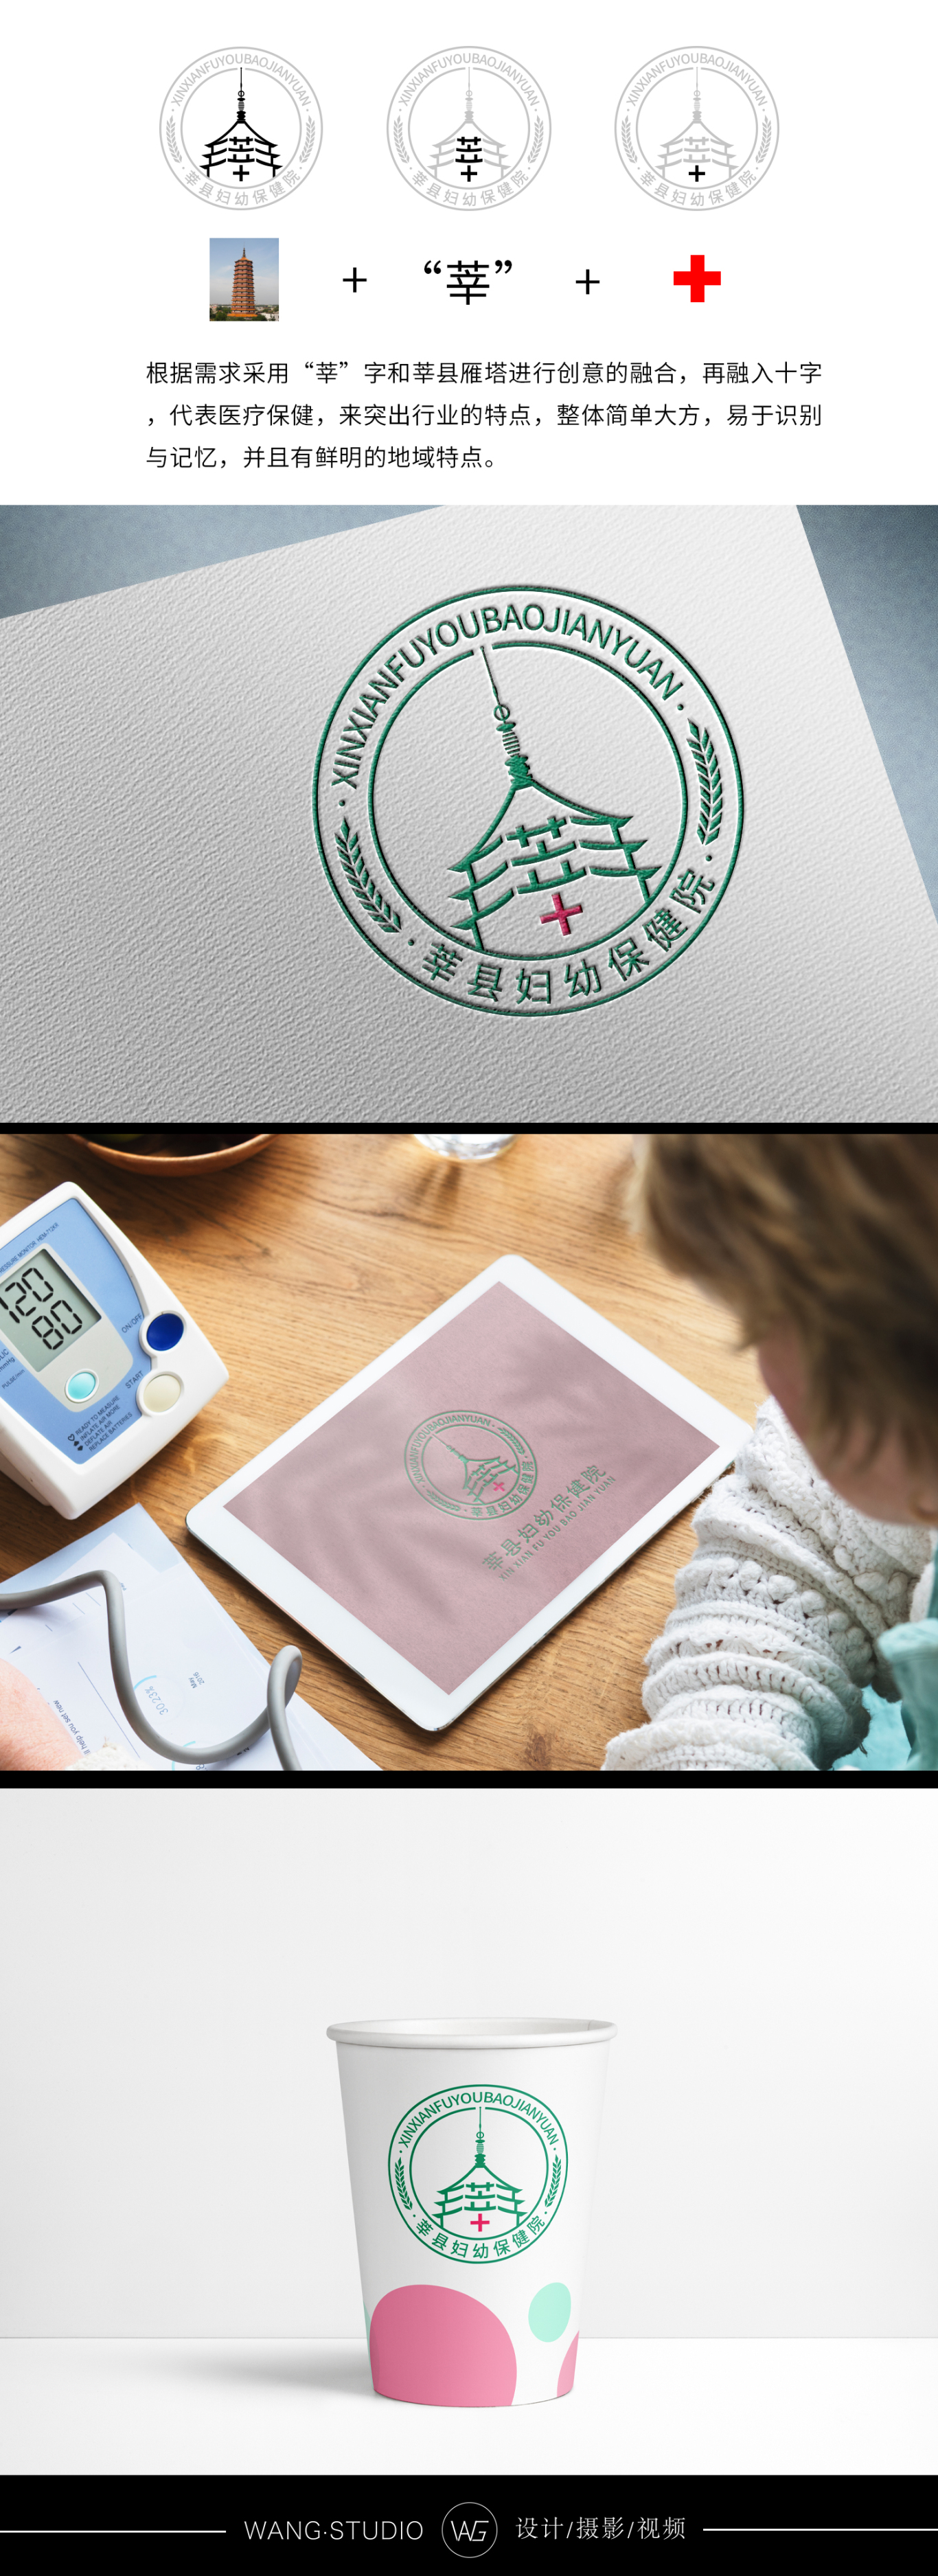  莘县妇幼保健院logo设计图0